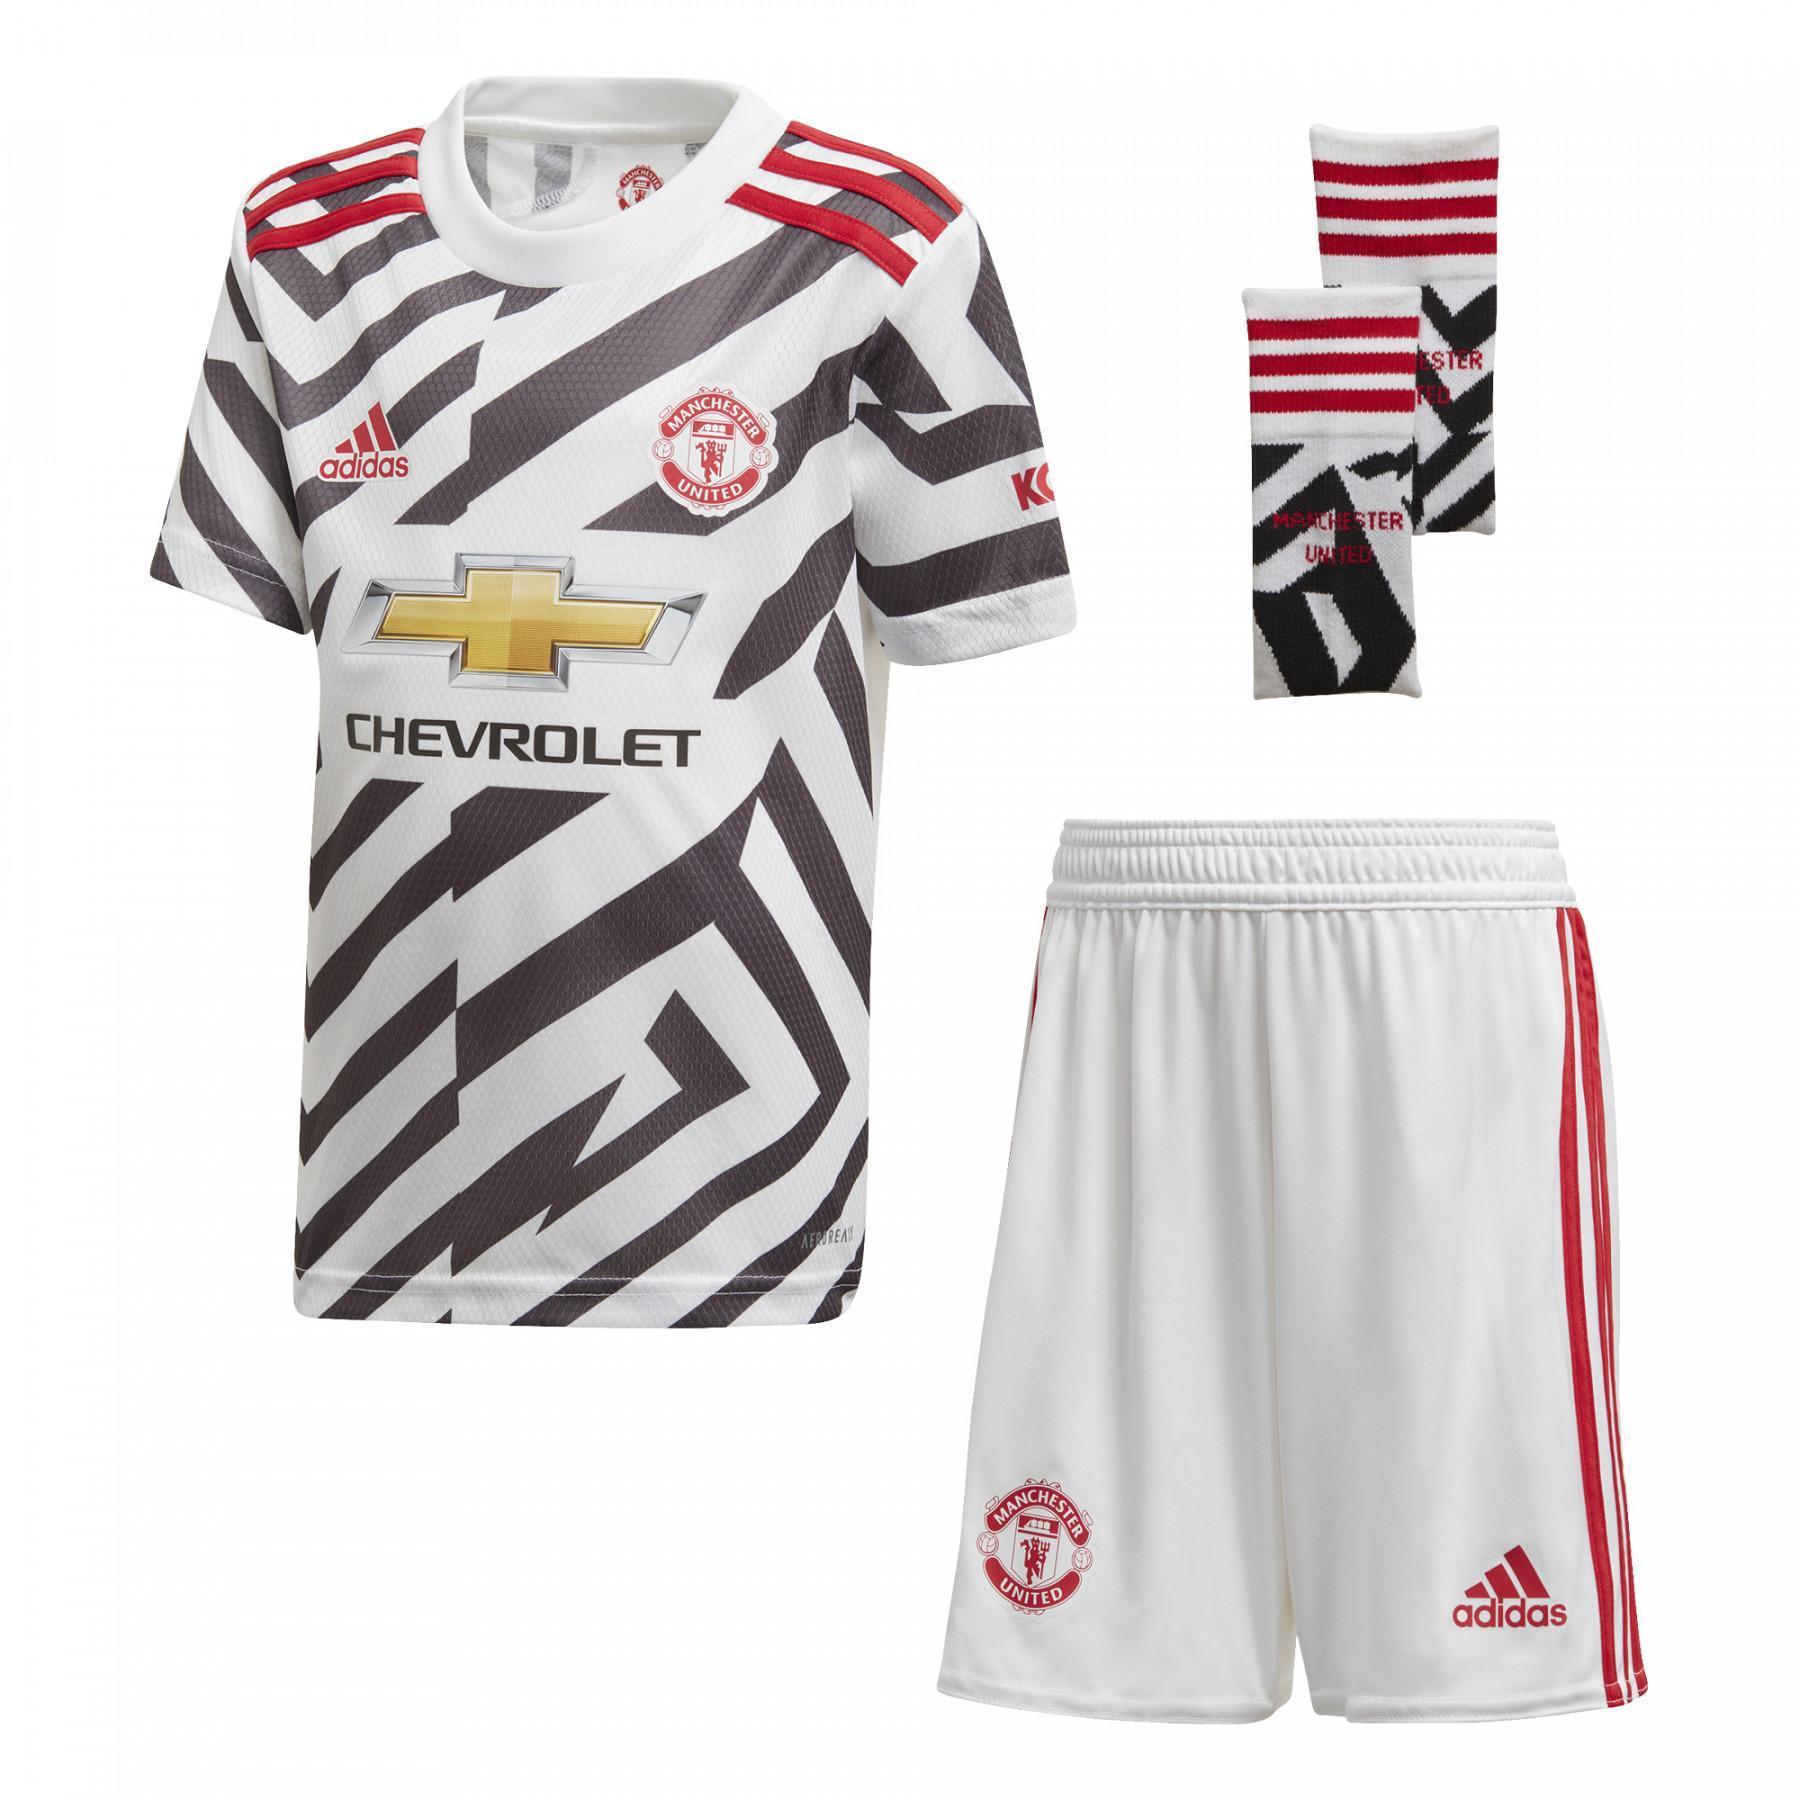 Mini-kit tredje Manchester United 2020/21